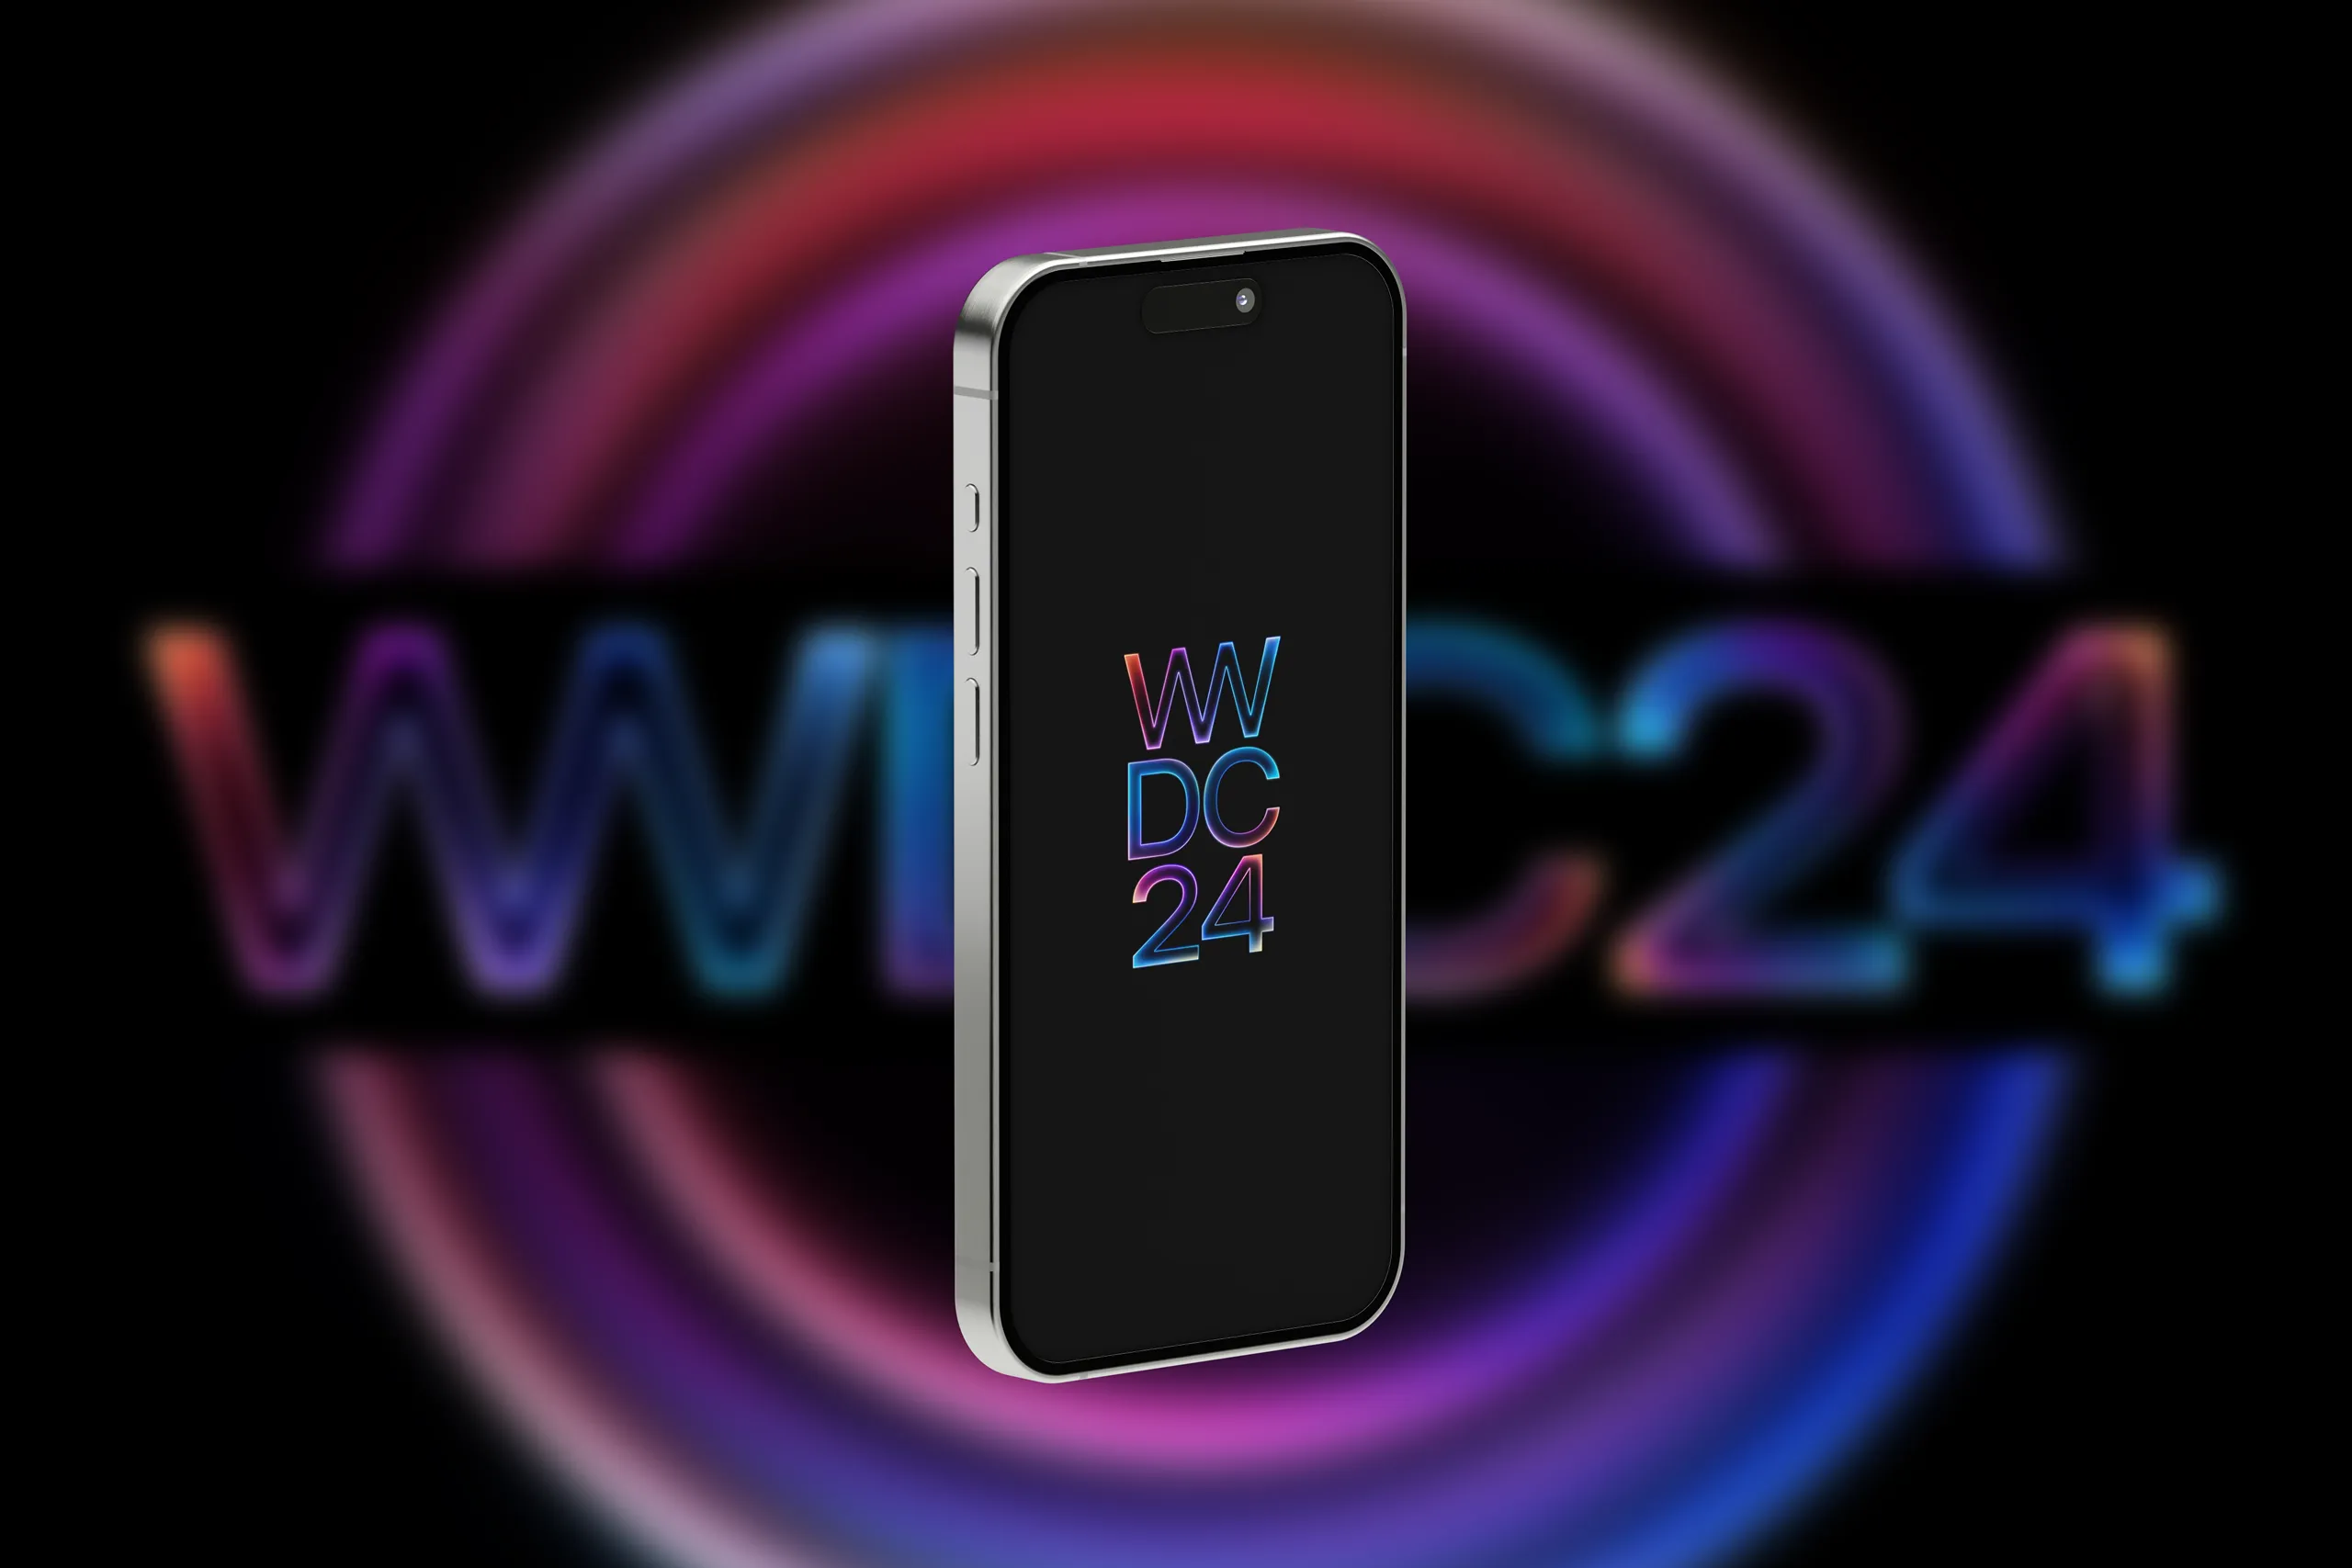 Hình nền iPhone đẹp và chất lượng cao chủ đề sự kiện WWDC 2024